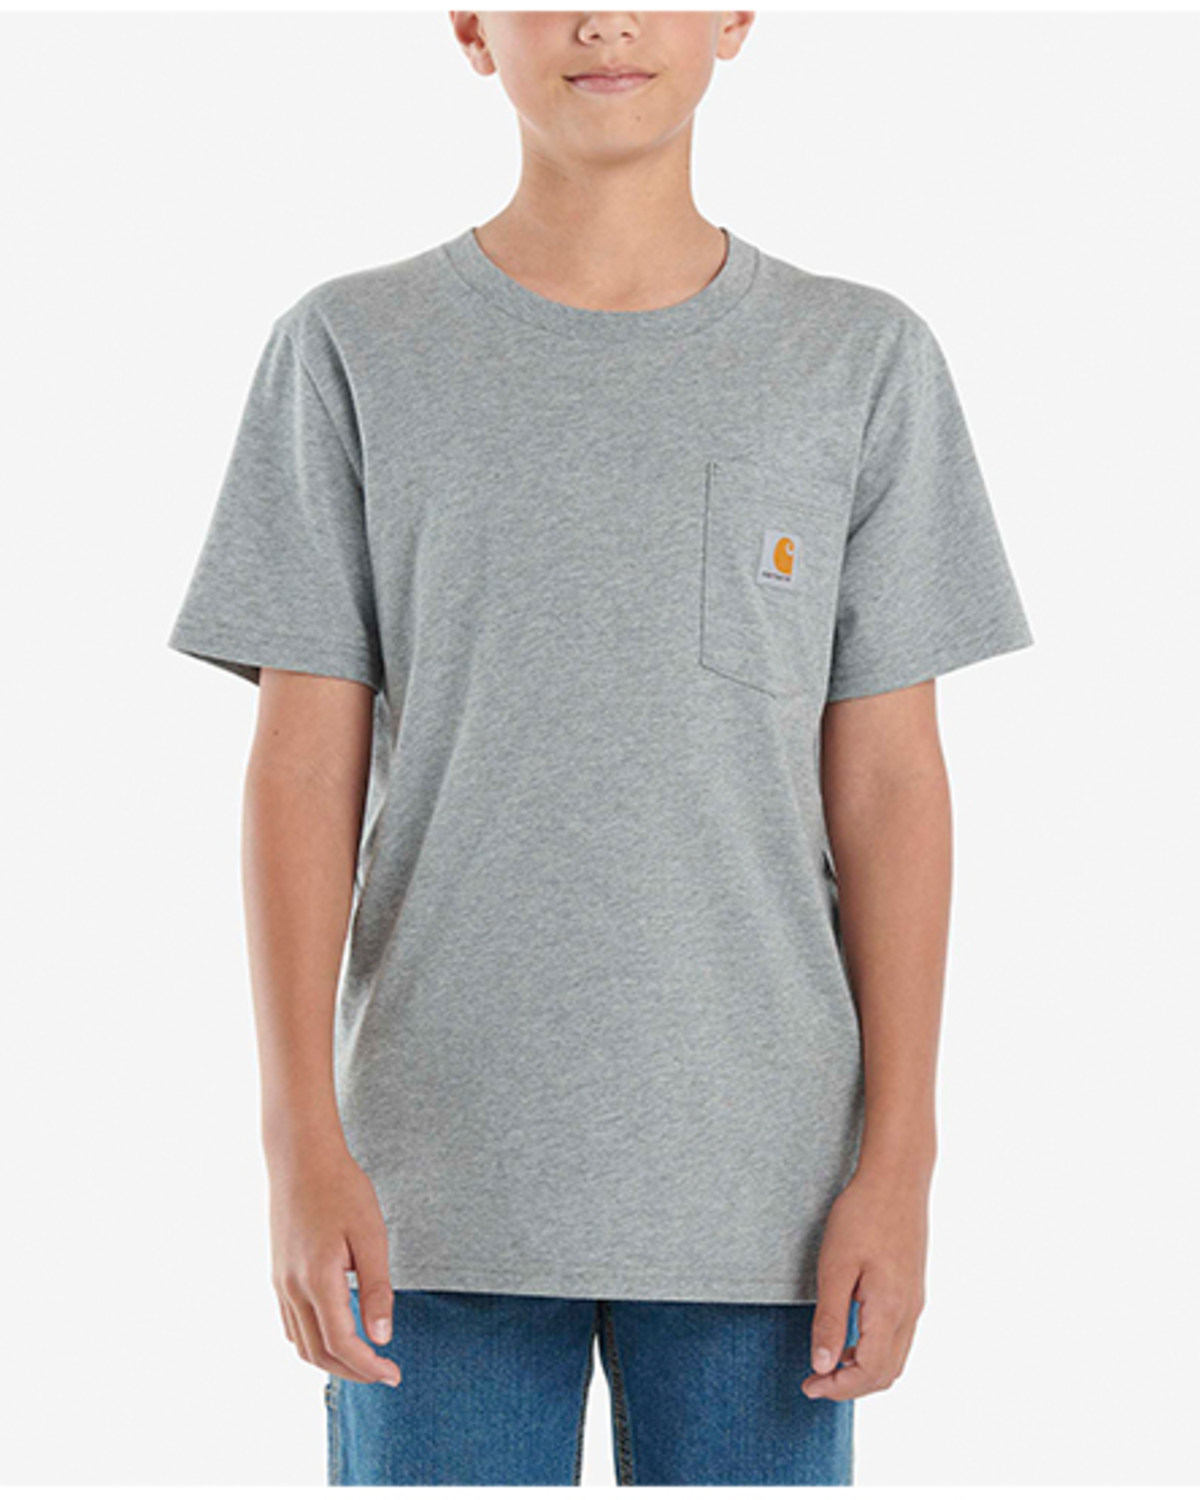 Carhartt Boys' Logo Short Sleeve Pocket T-Shirt